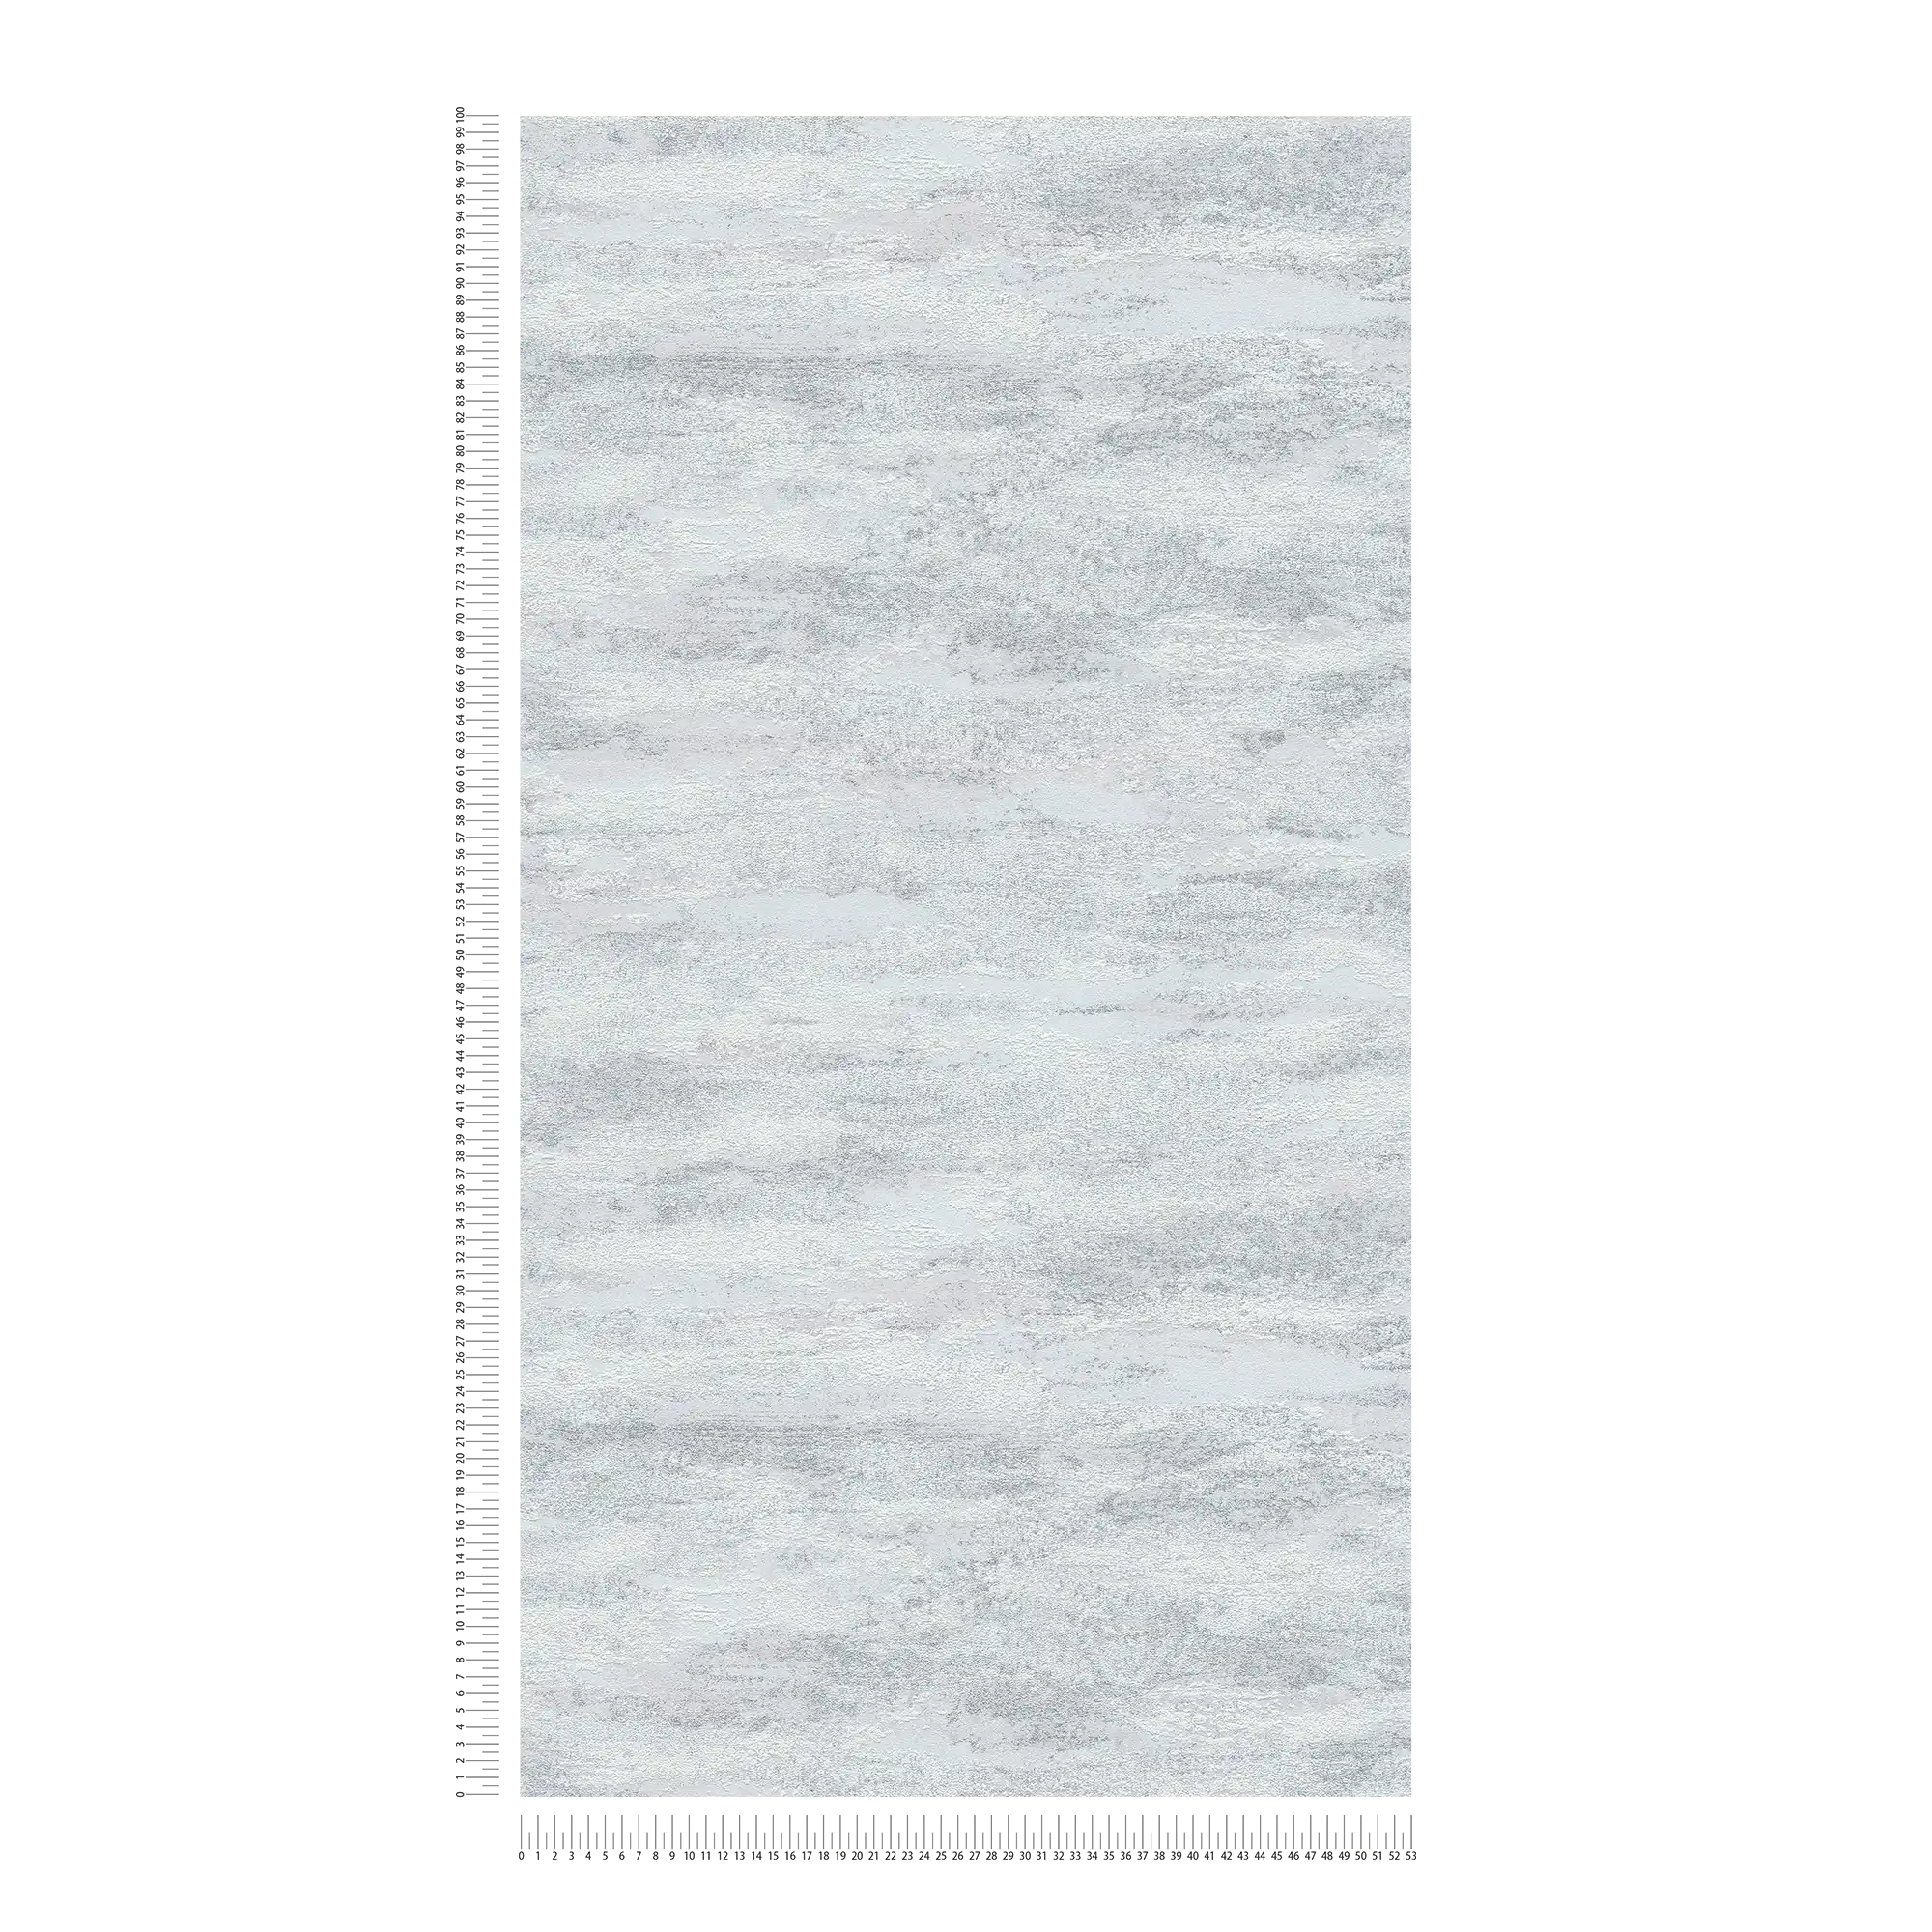             Wallpaper in a mottled light wave pattern - grey, silver
        